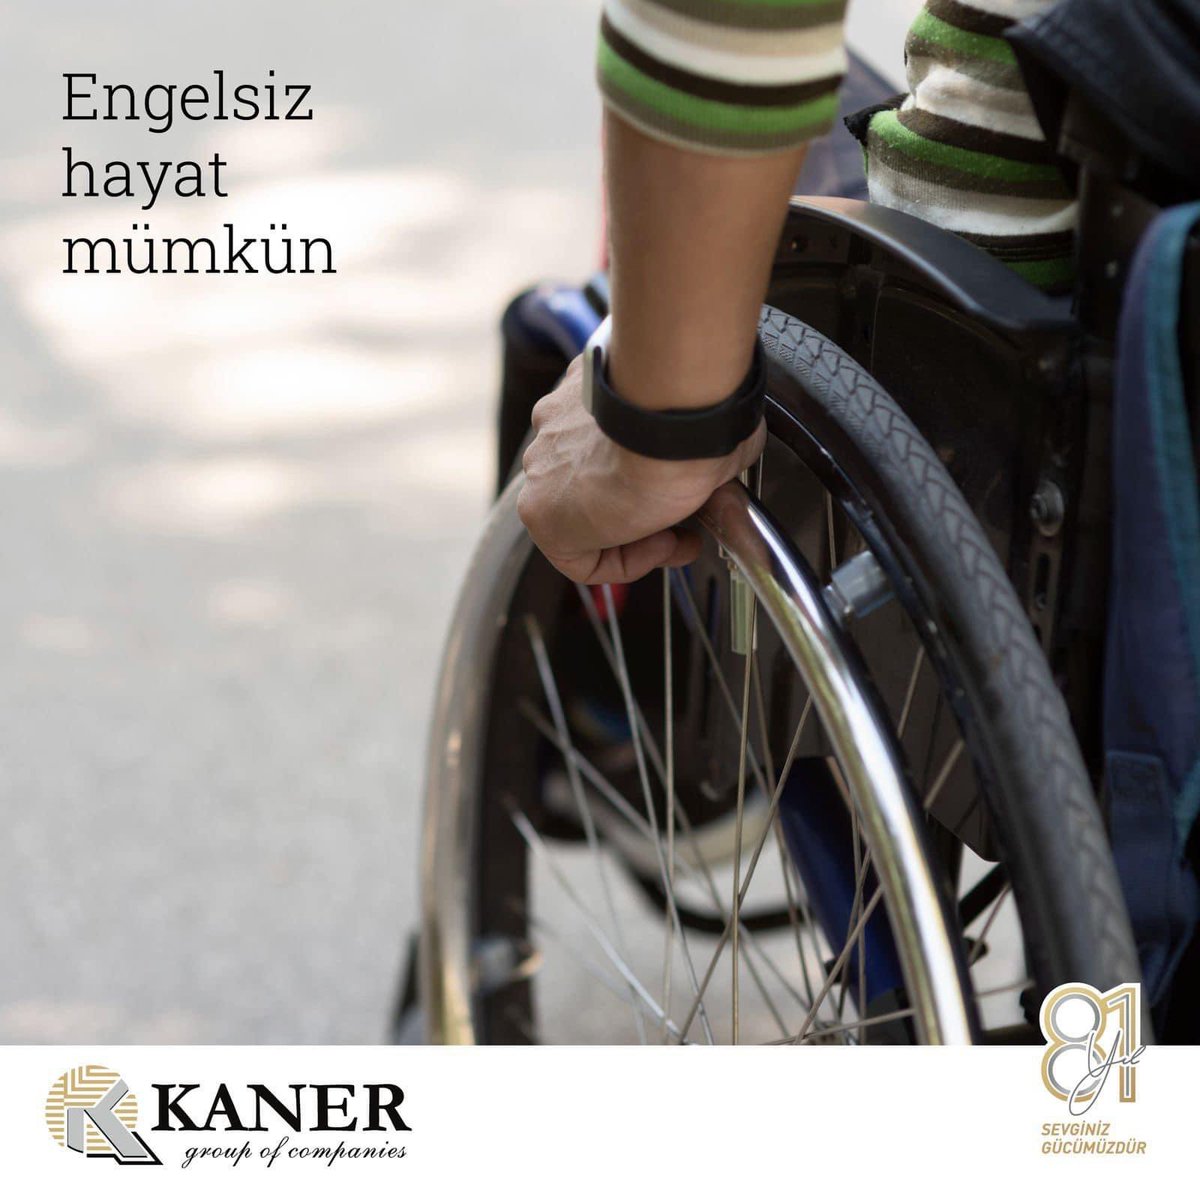 Engelleri kaldırmak ve engelli bireylerin yaşamlarını kolaylaştırmak hepimizin görevi. 

3 Aralık Dünya Engelliler Günü vesilesiyle bunu bir kez daha hatırlatmak istiyoruz.

#kanergroupofcompanies #engellerikaldır